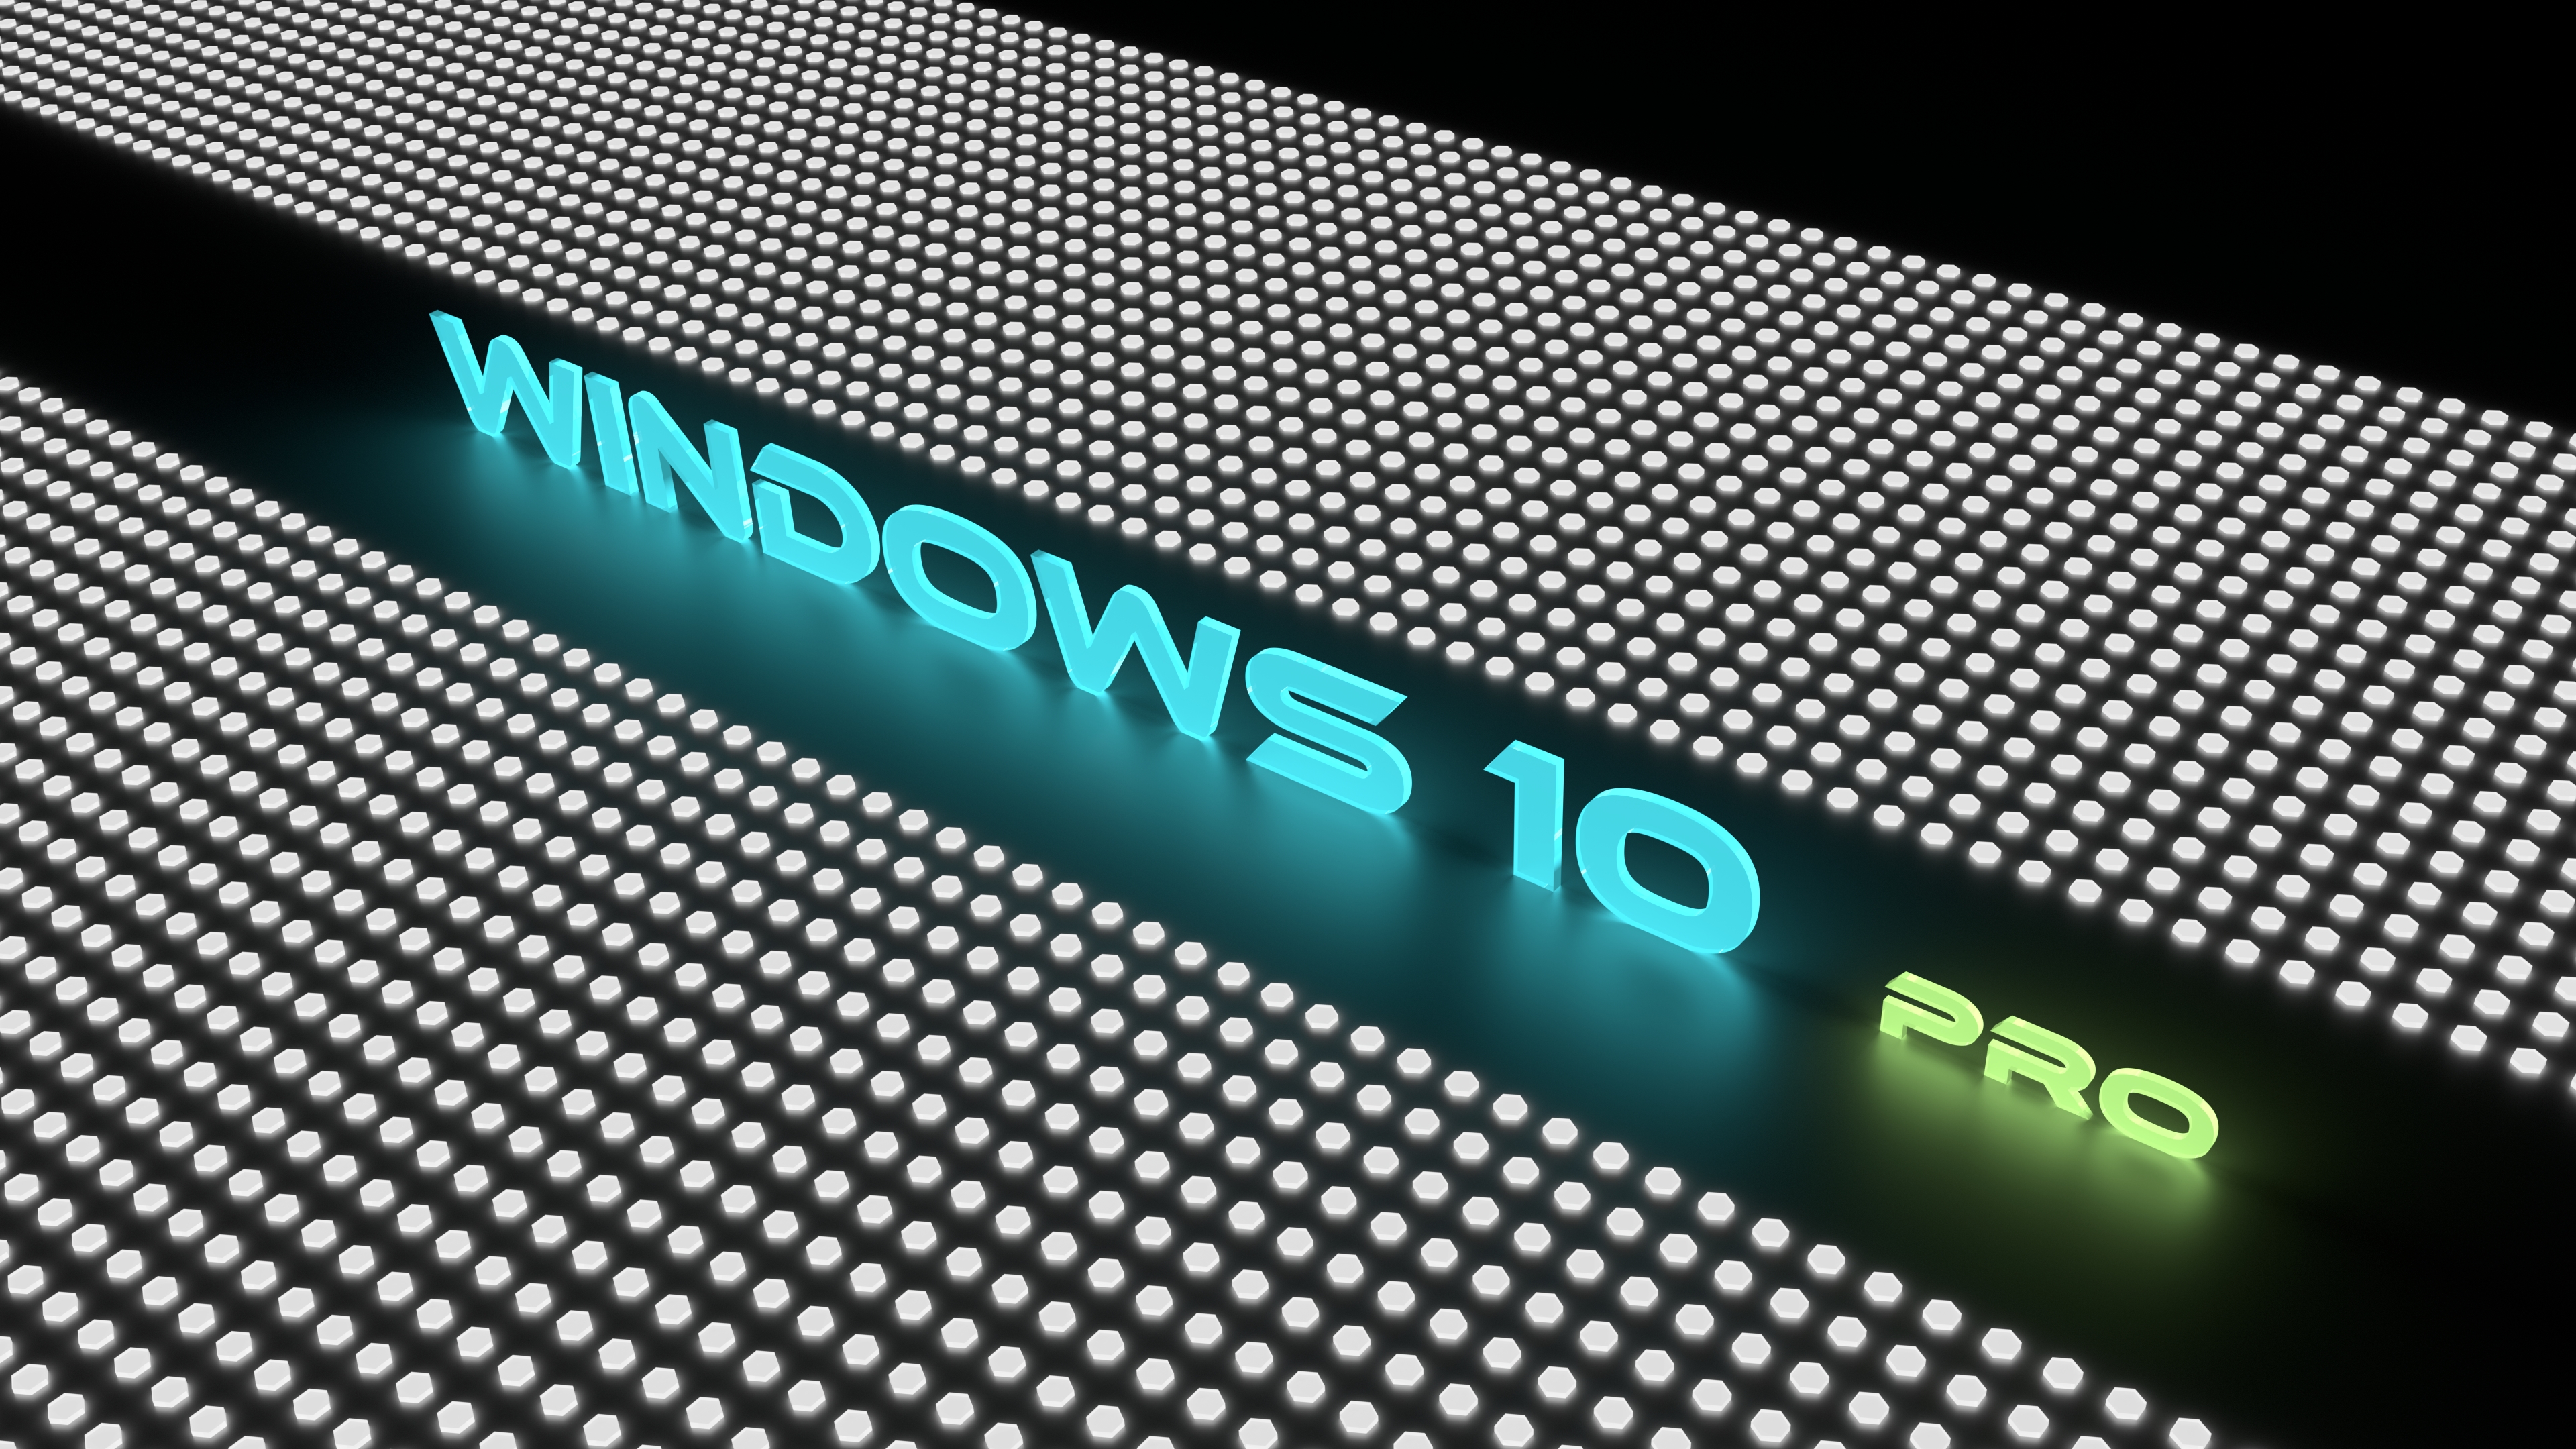 Dream r10 pro. Обои на компьютер современные. Заставка леново. Обои Windows 10. Обои с логотипом Windows 10.